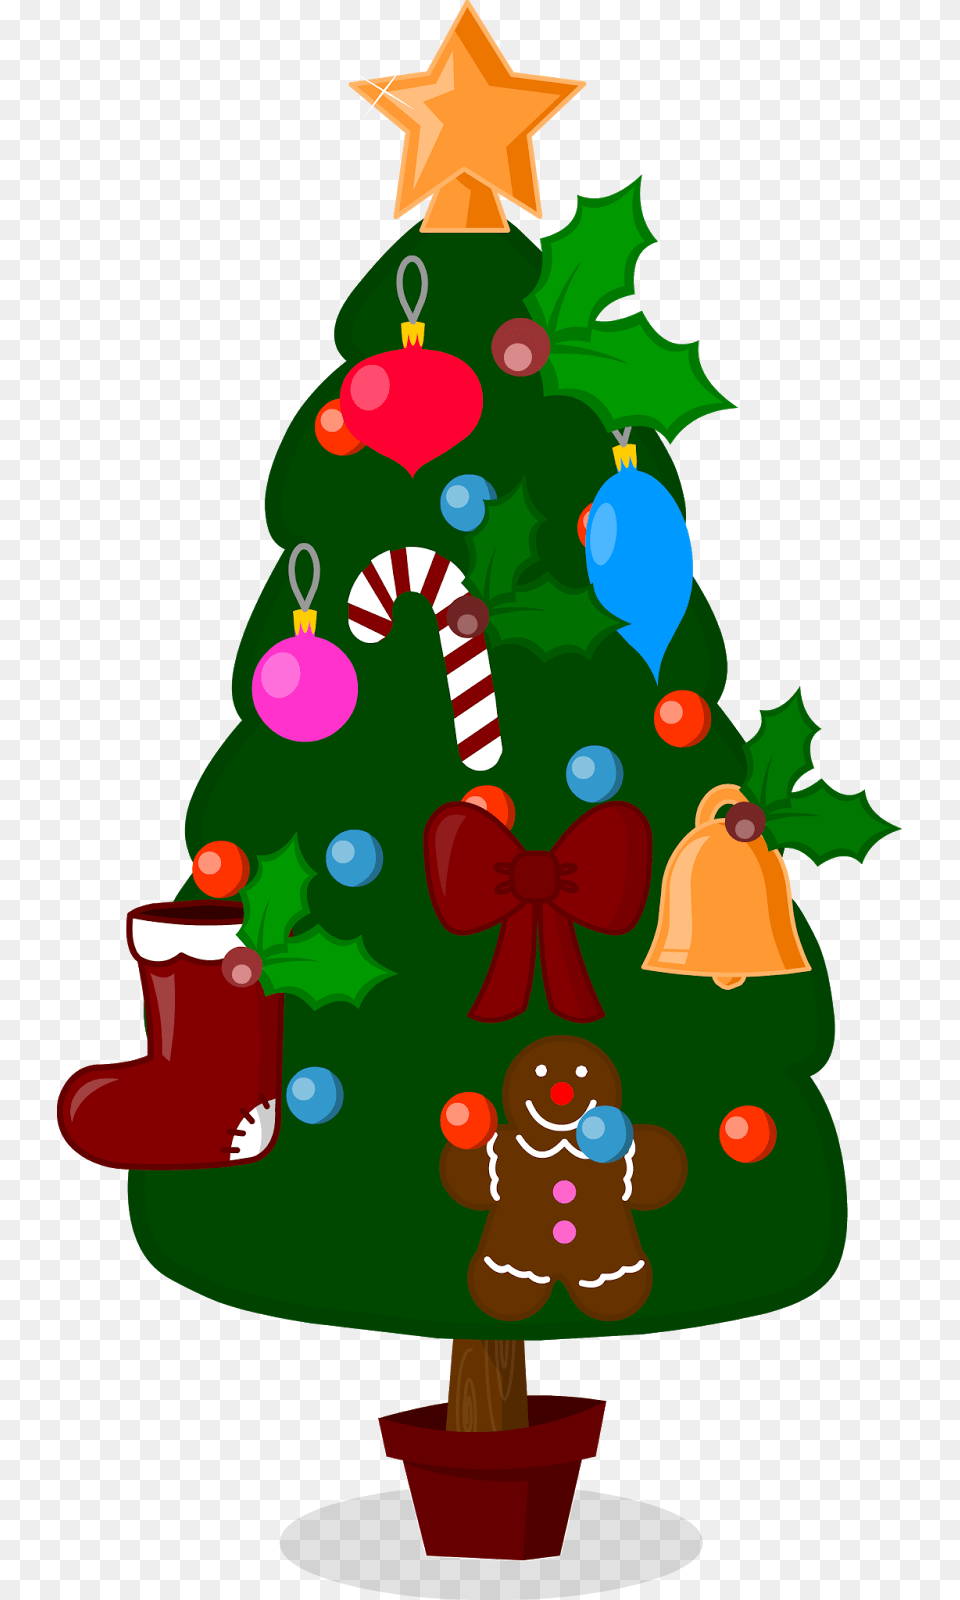 Arbol De Navidad Arbol De Navidad Caricatura, Christmas, Christmas Decorations, Festival, Plant Free Transparent Png